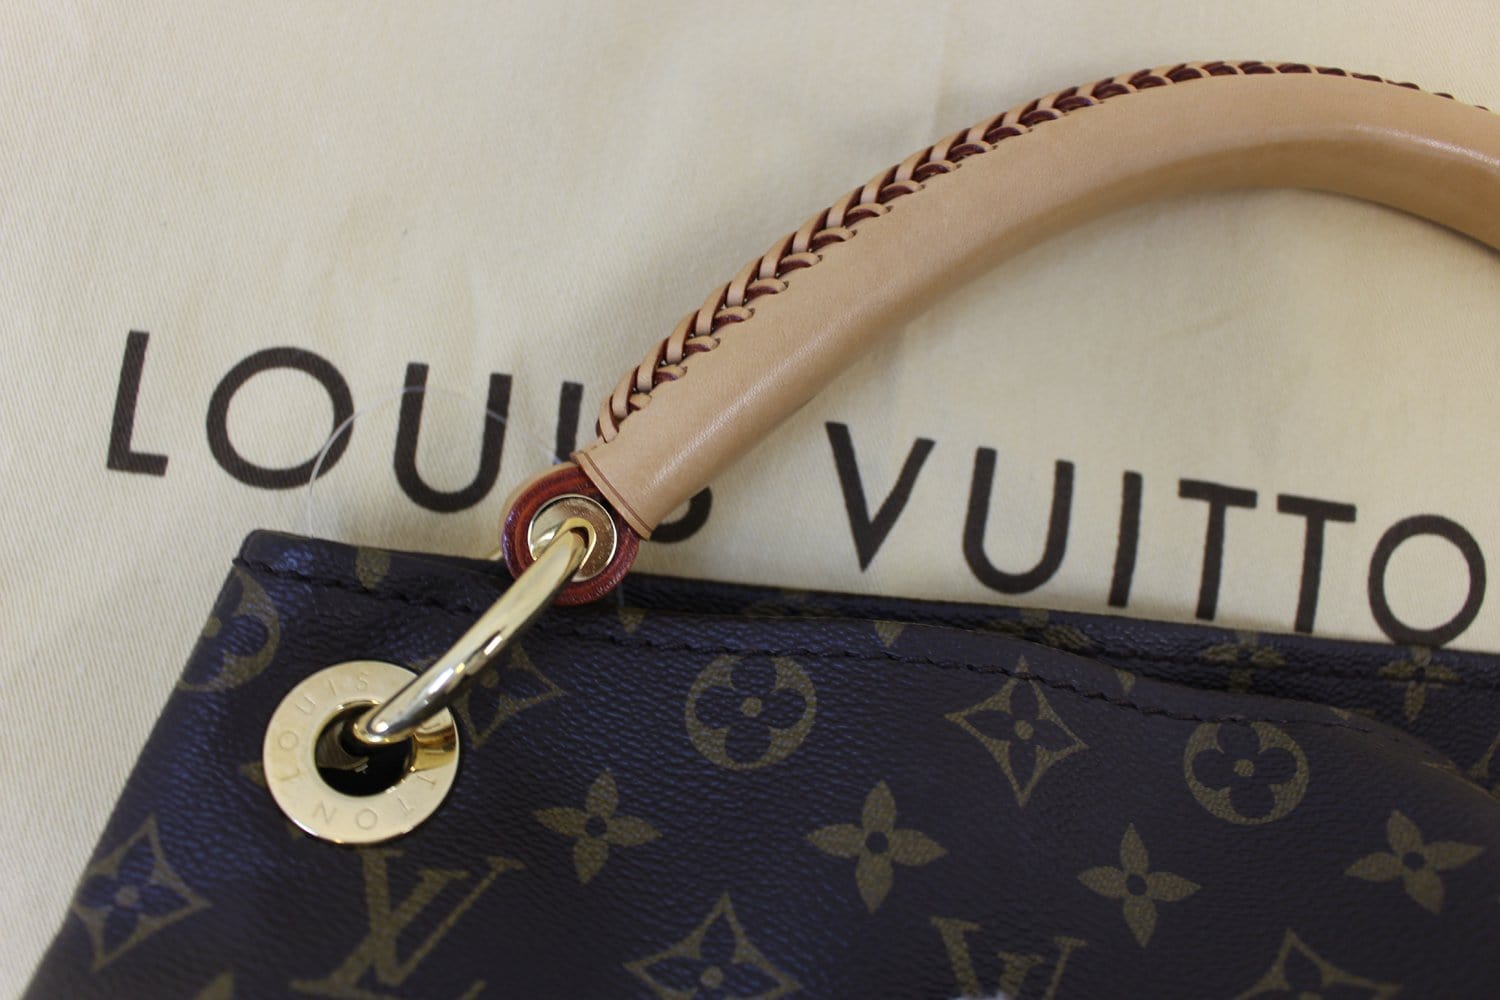 ❤️Louis Vuitton Monogram Artsy MM ❤️ 100% Auth LV Hobo Handbag Purse w/Dust  Bag